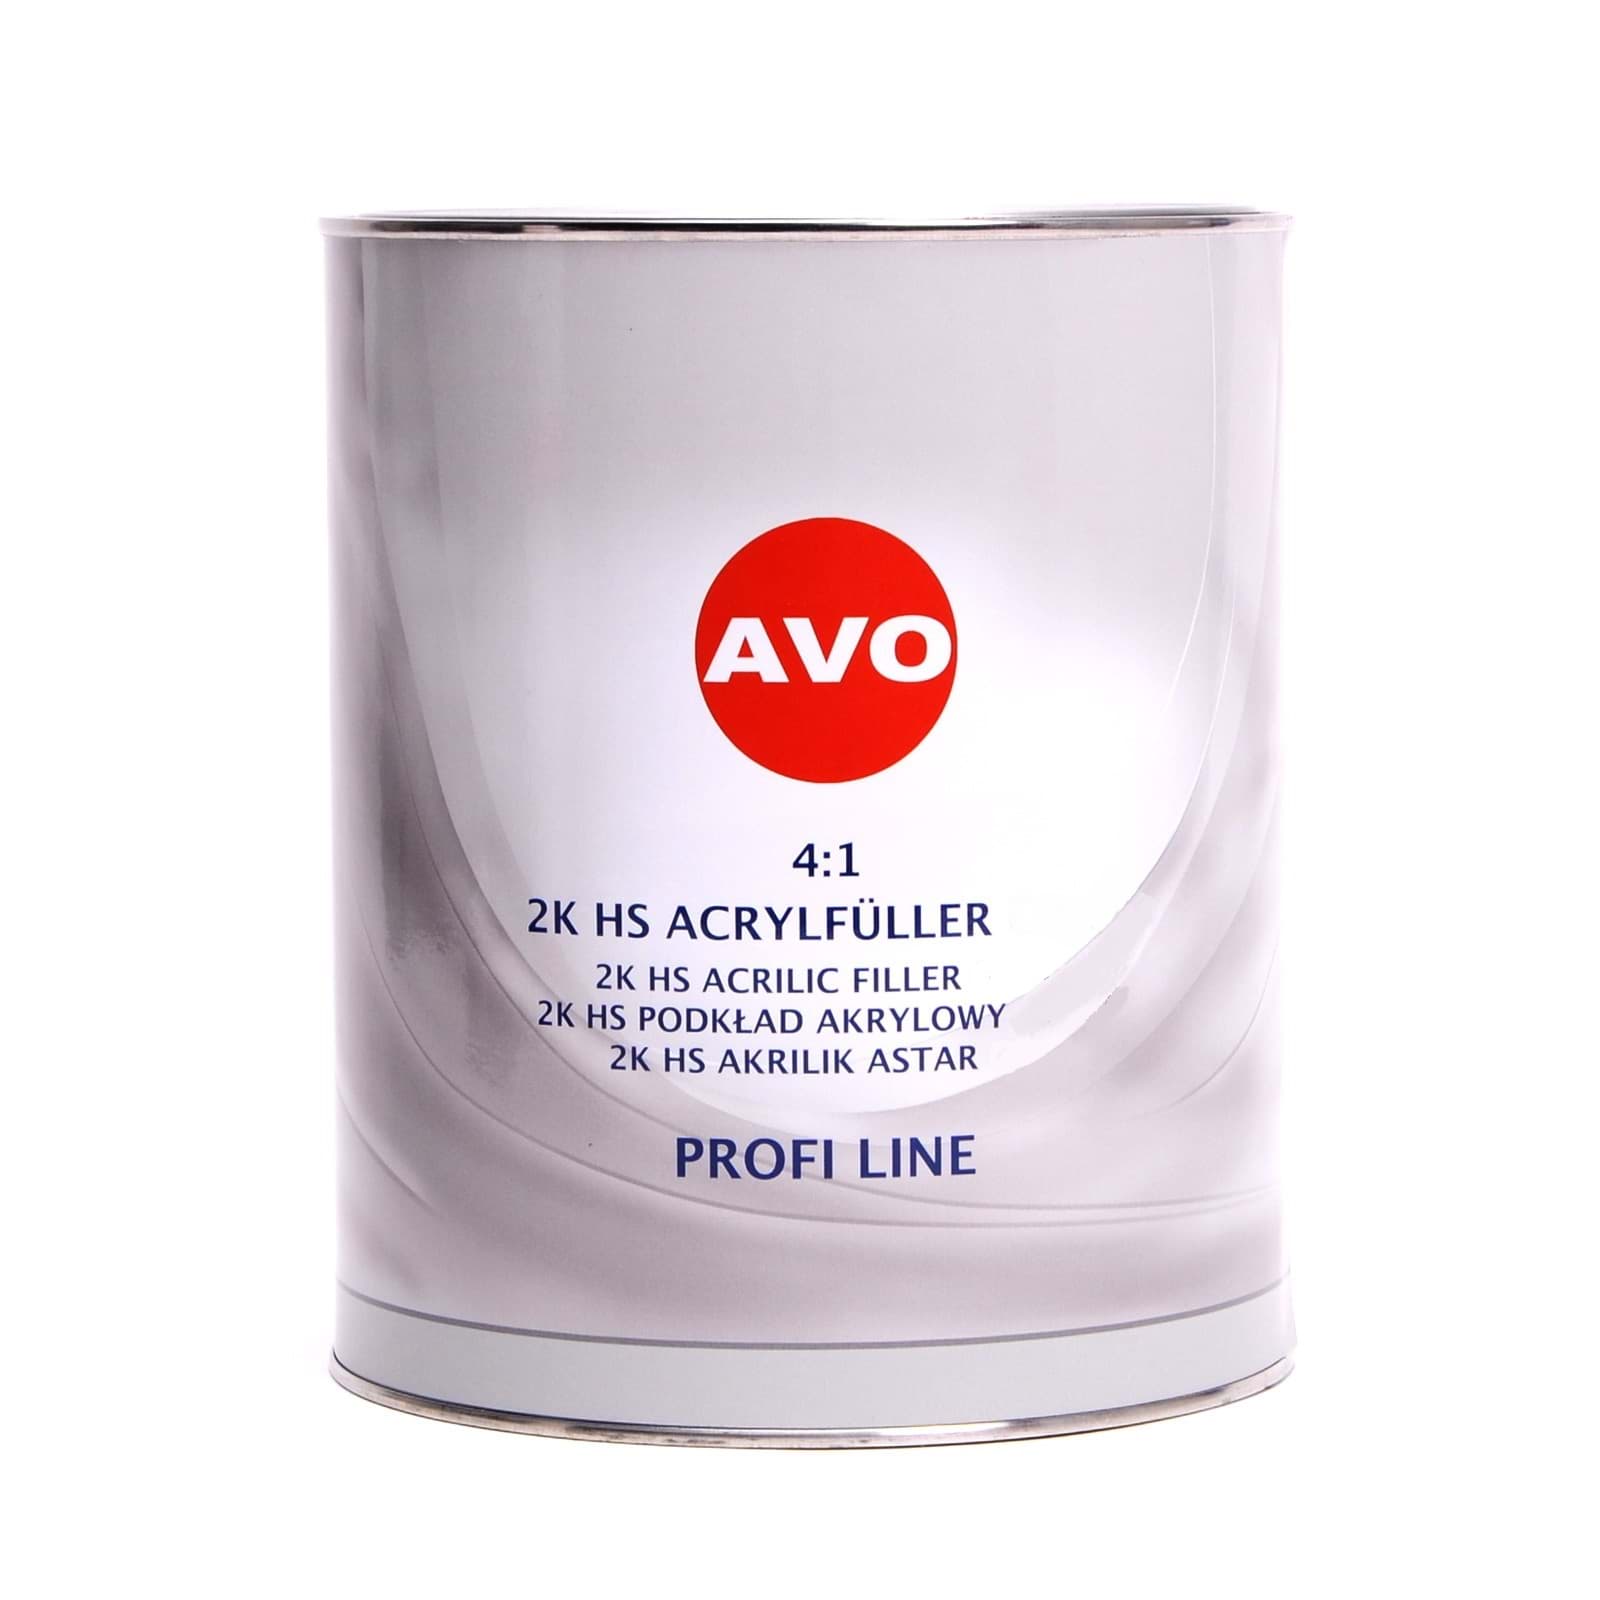 Picture of AVO 2K HS 4:1 Grundier Füller  Acrylfiller schwarz 4 Liter